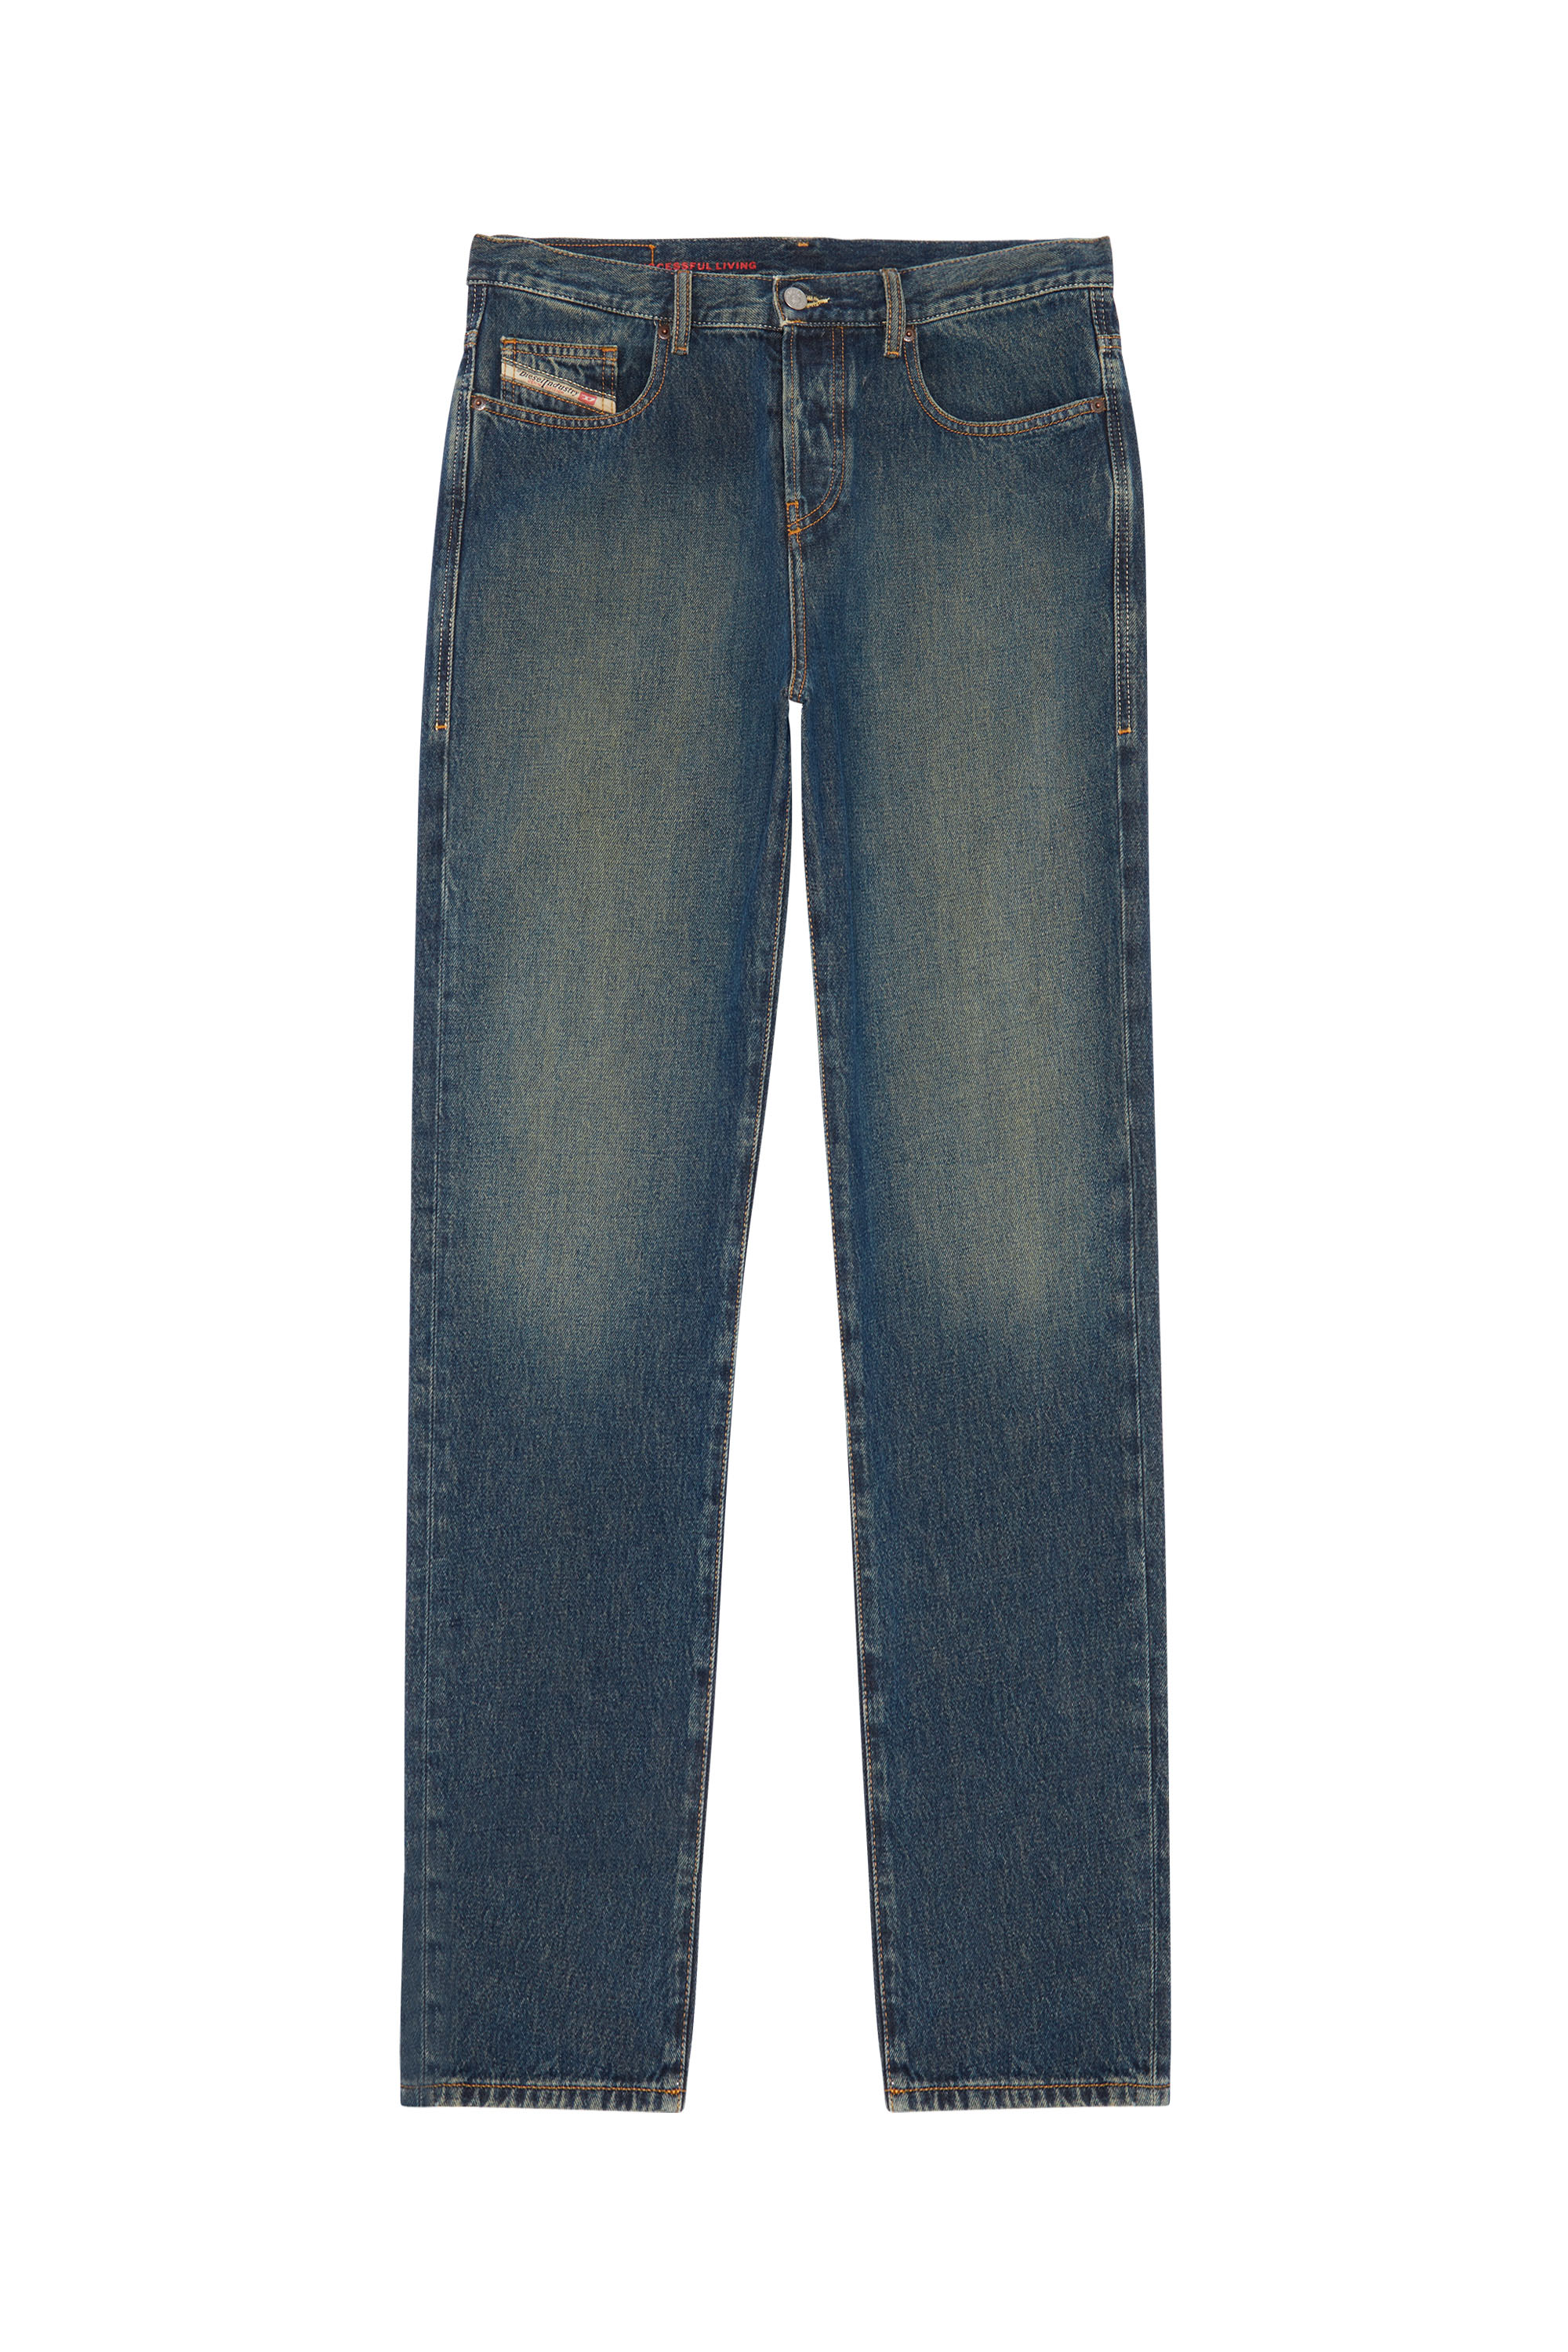 2020 D-VIKER 09C04 Straight Jeans, Dunkelblau - Jeans